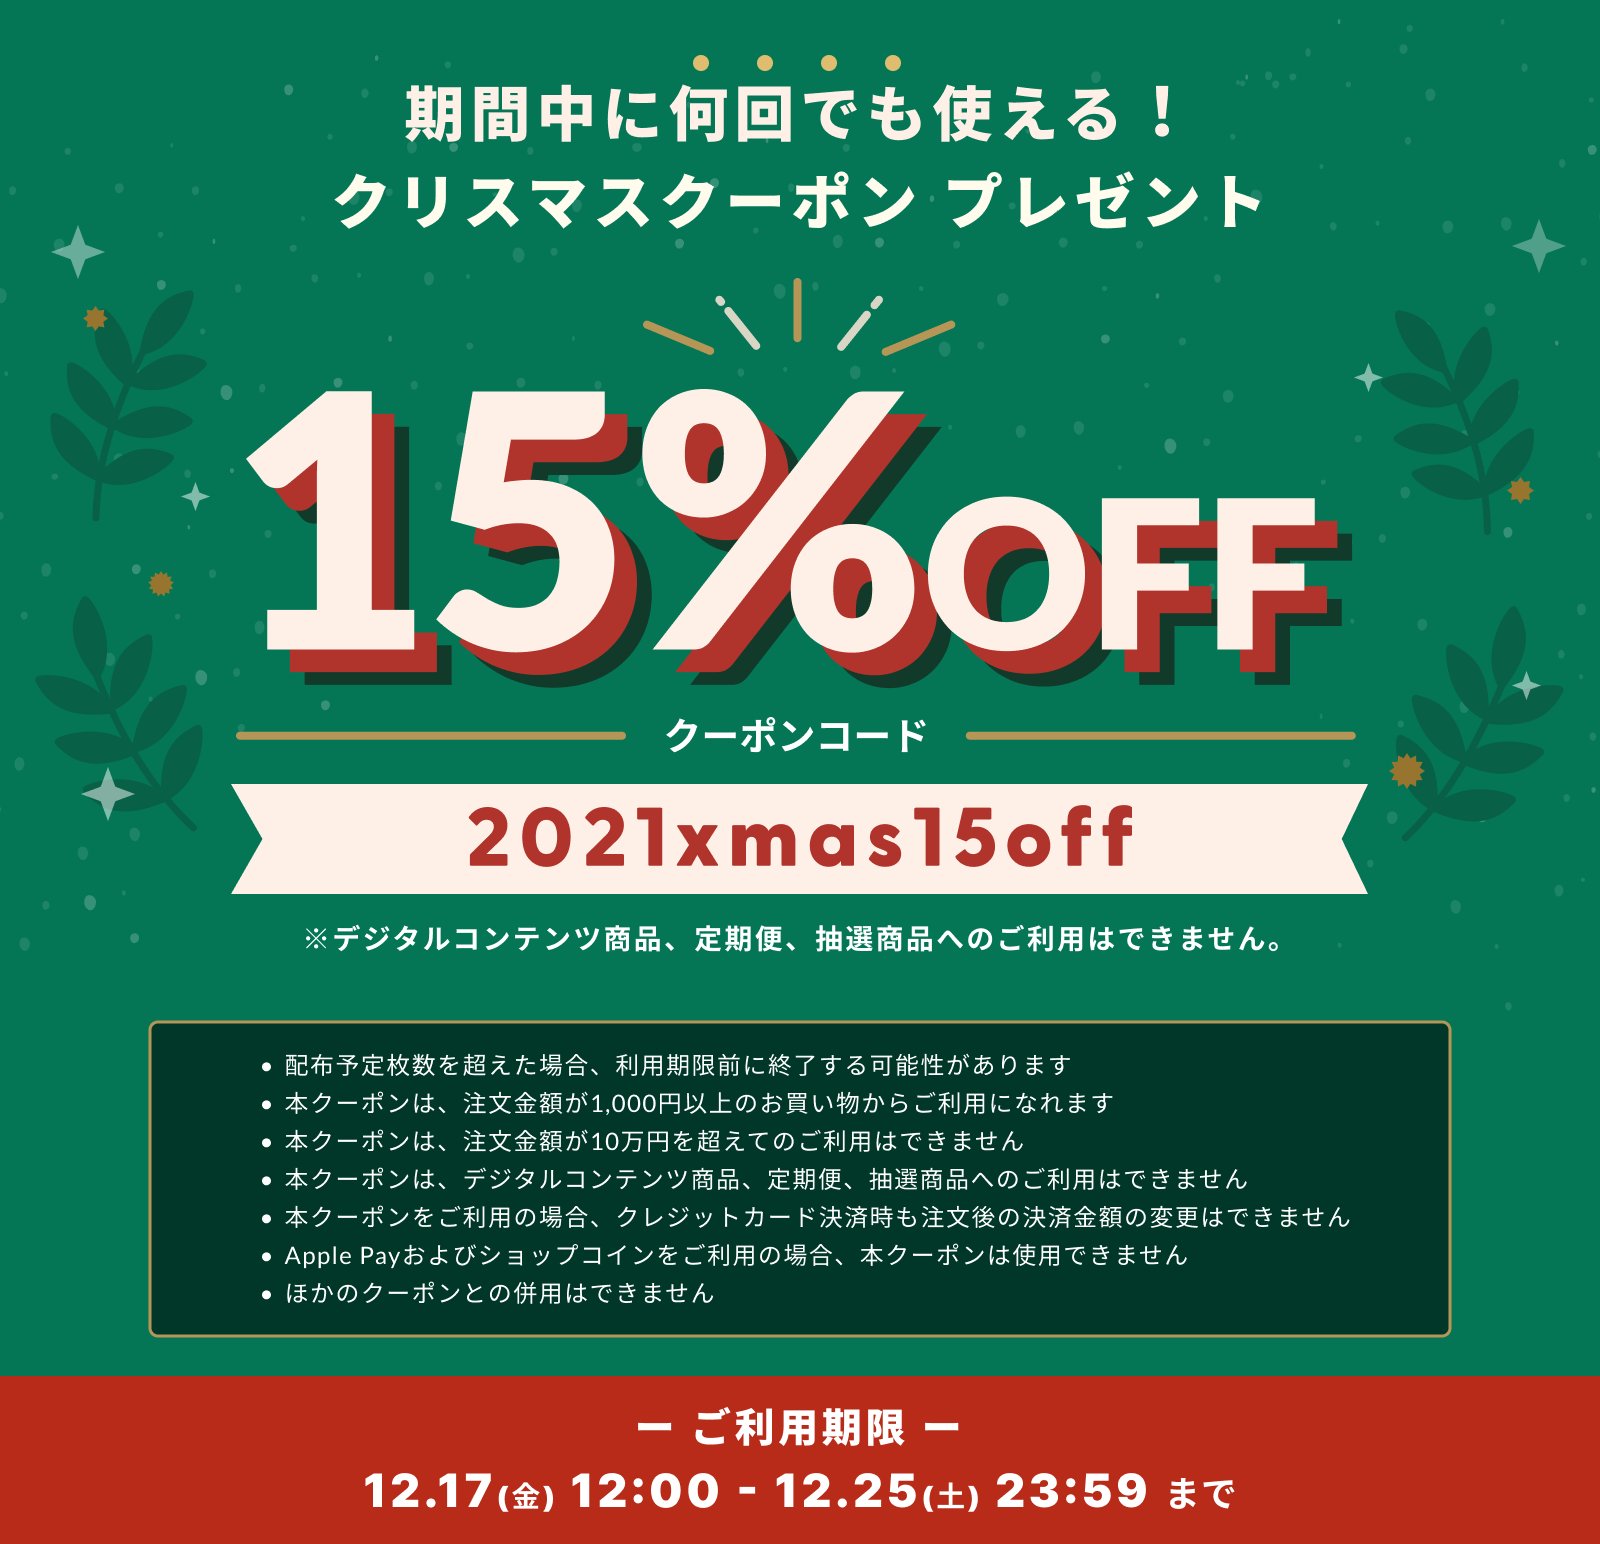 【12/17〜25】15%offクーポン